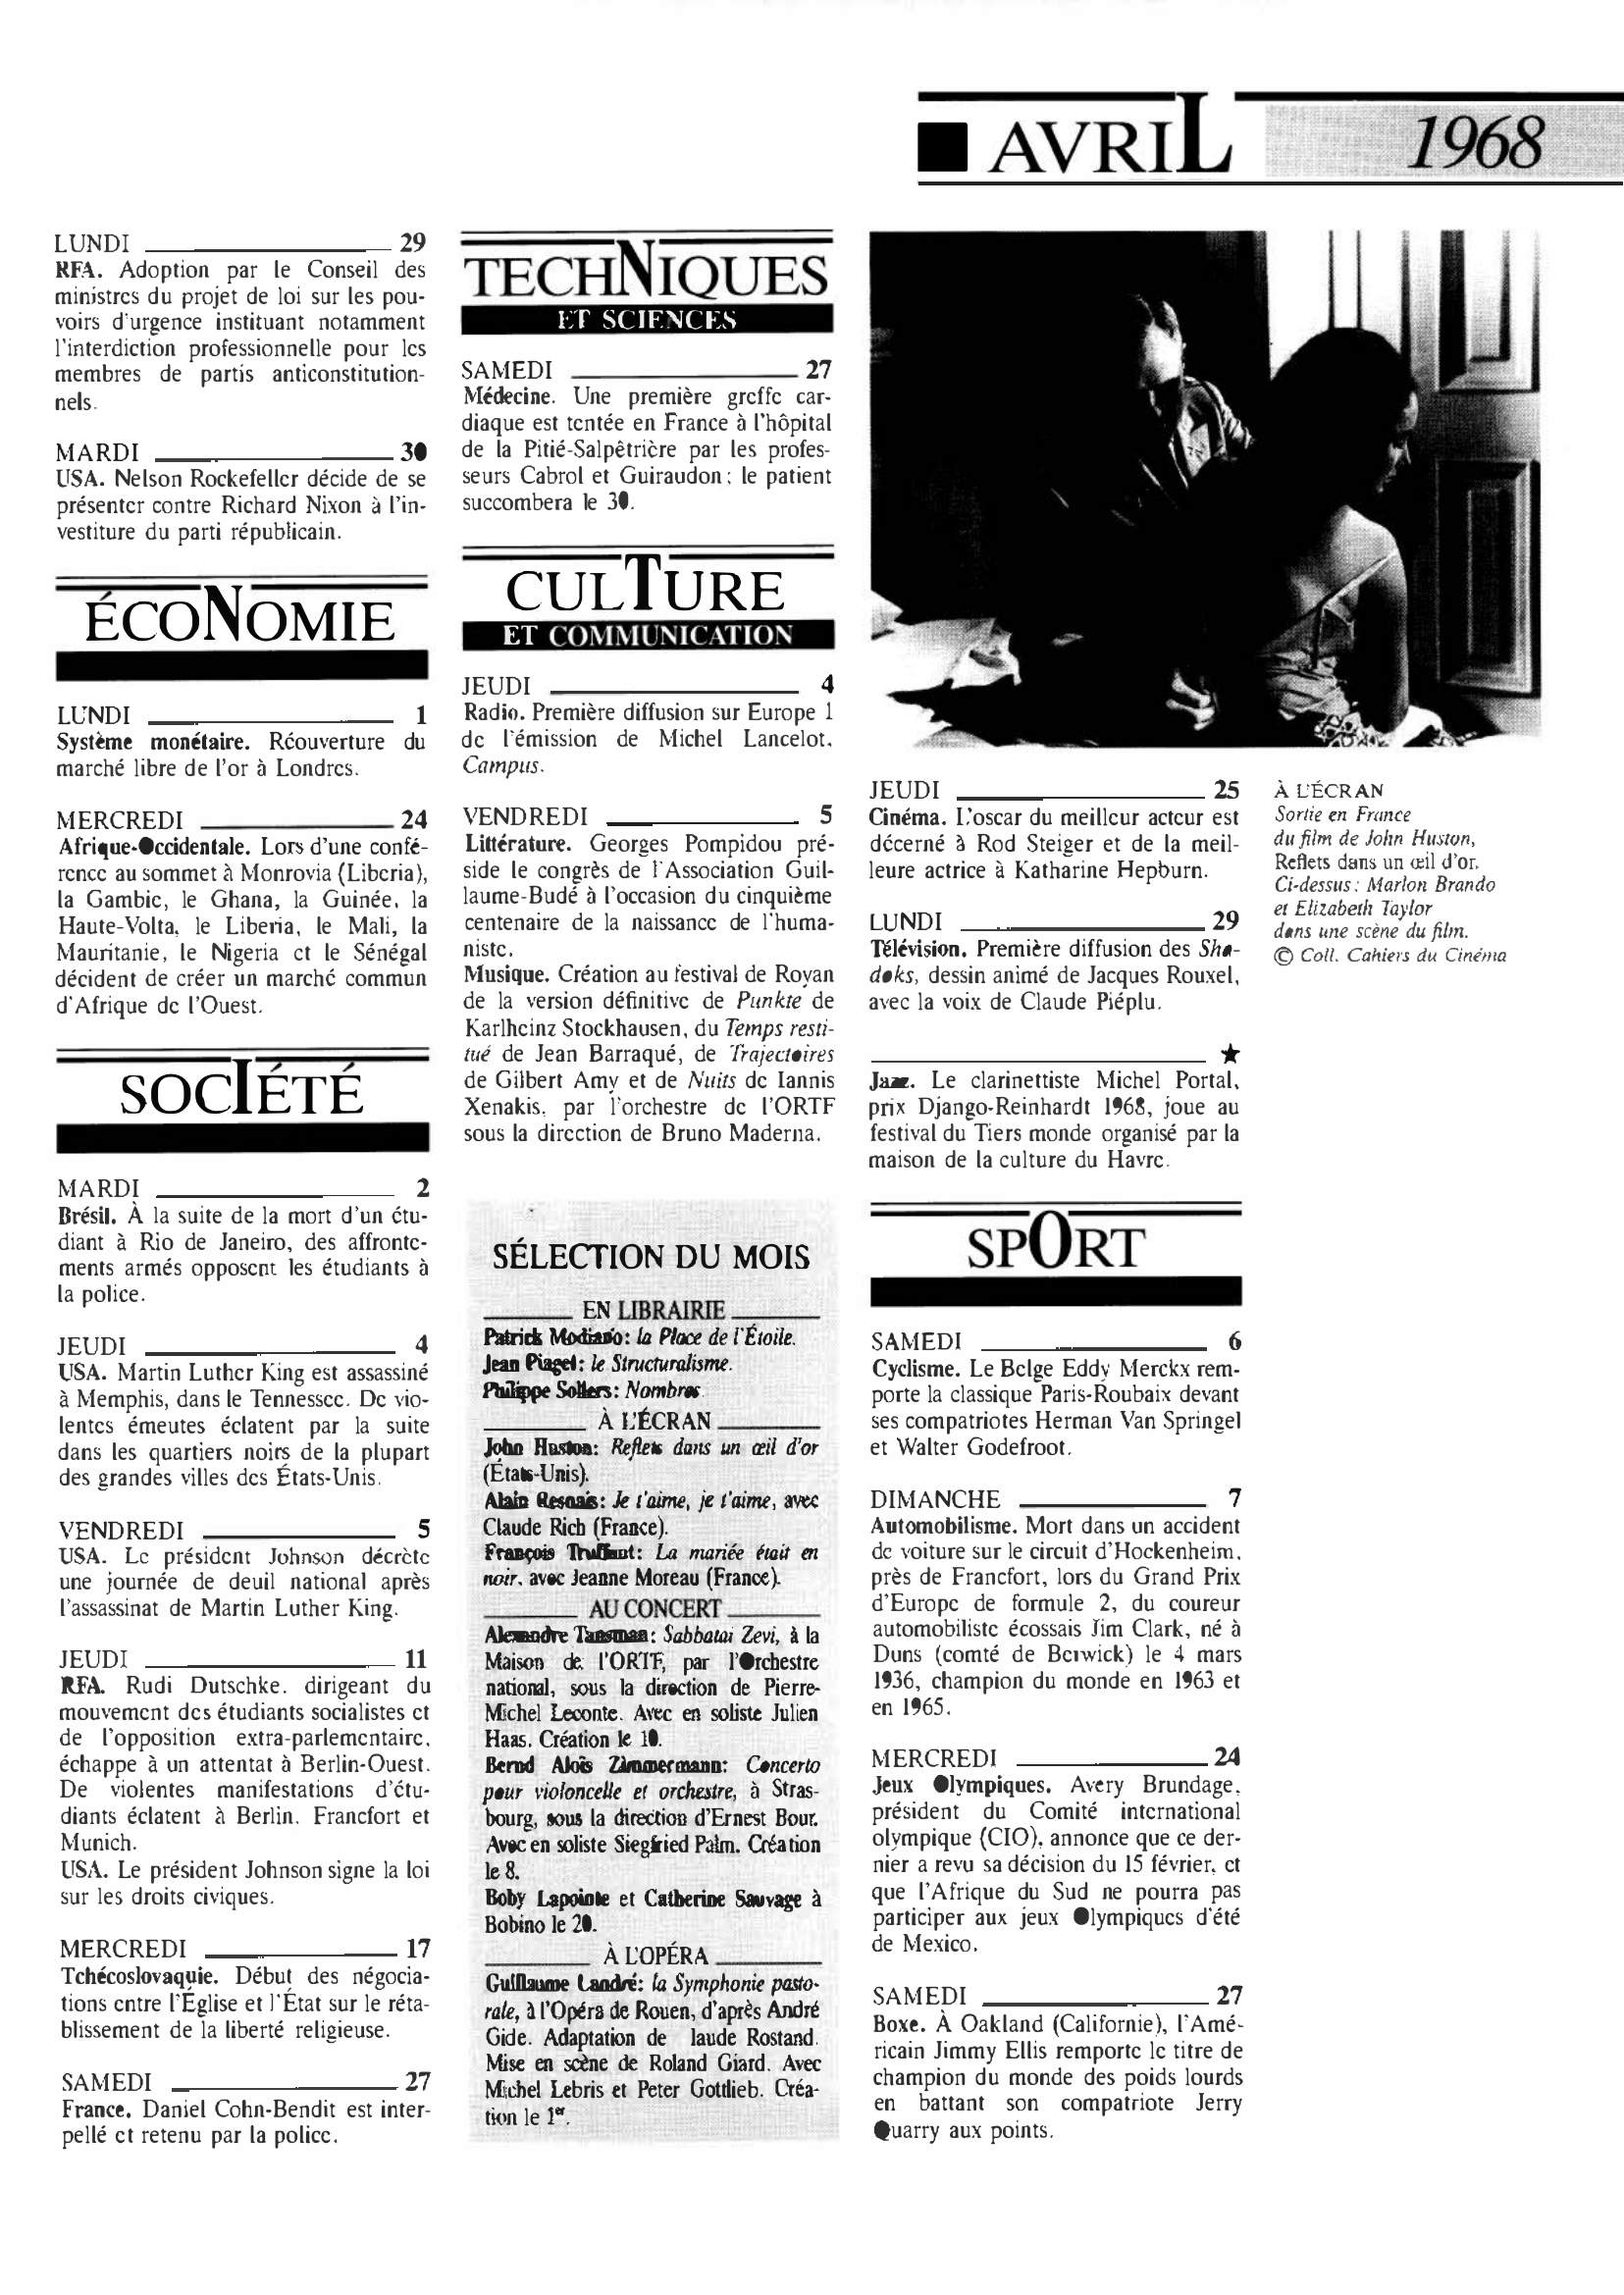 Prévisualisation du document 1968 Avril dans le monde (histoire chronologique)